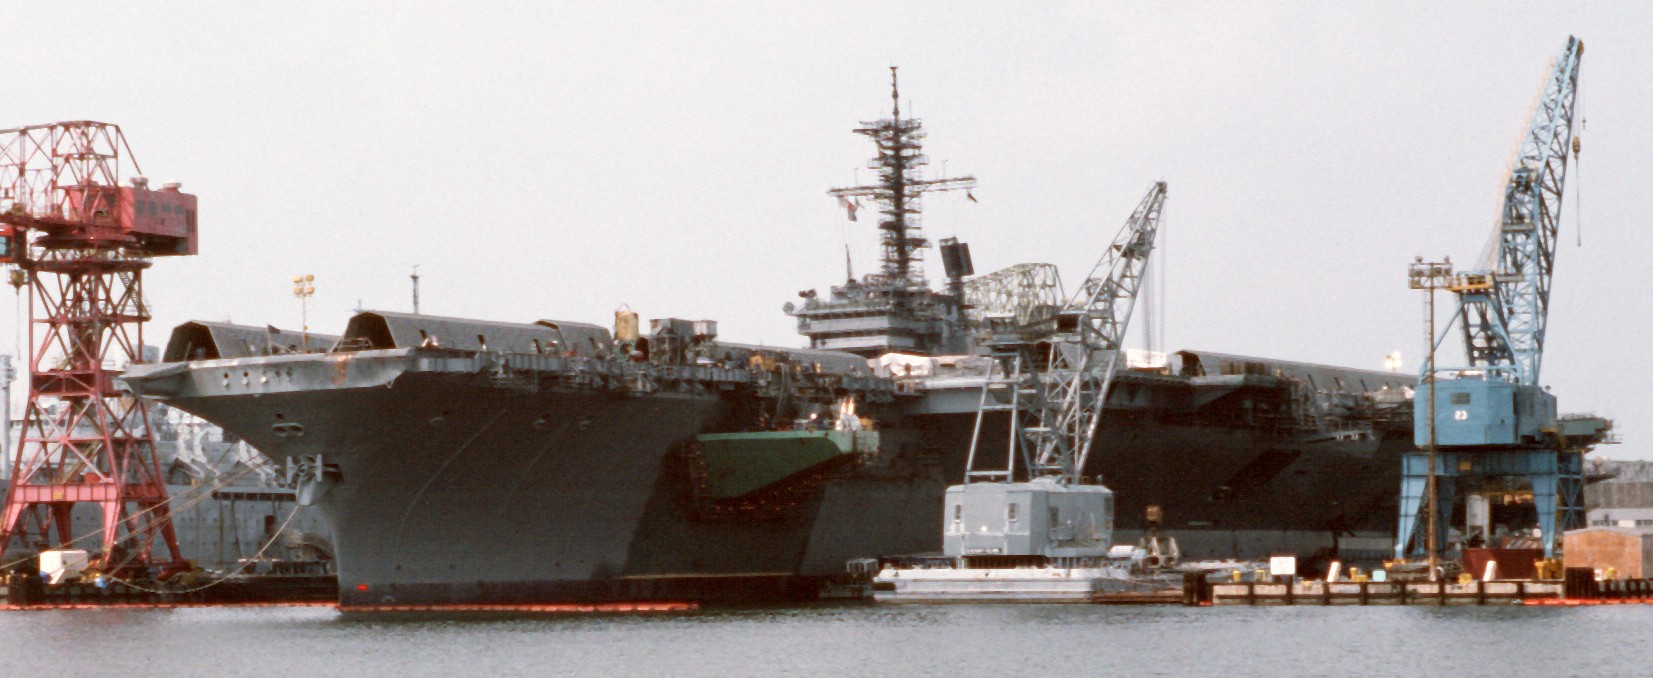 cv-66 uss america kitty hawk class aircraft carrier us navy norfolk naval shipyard edsra 92